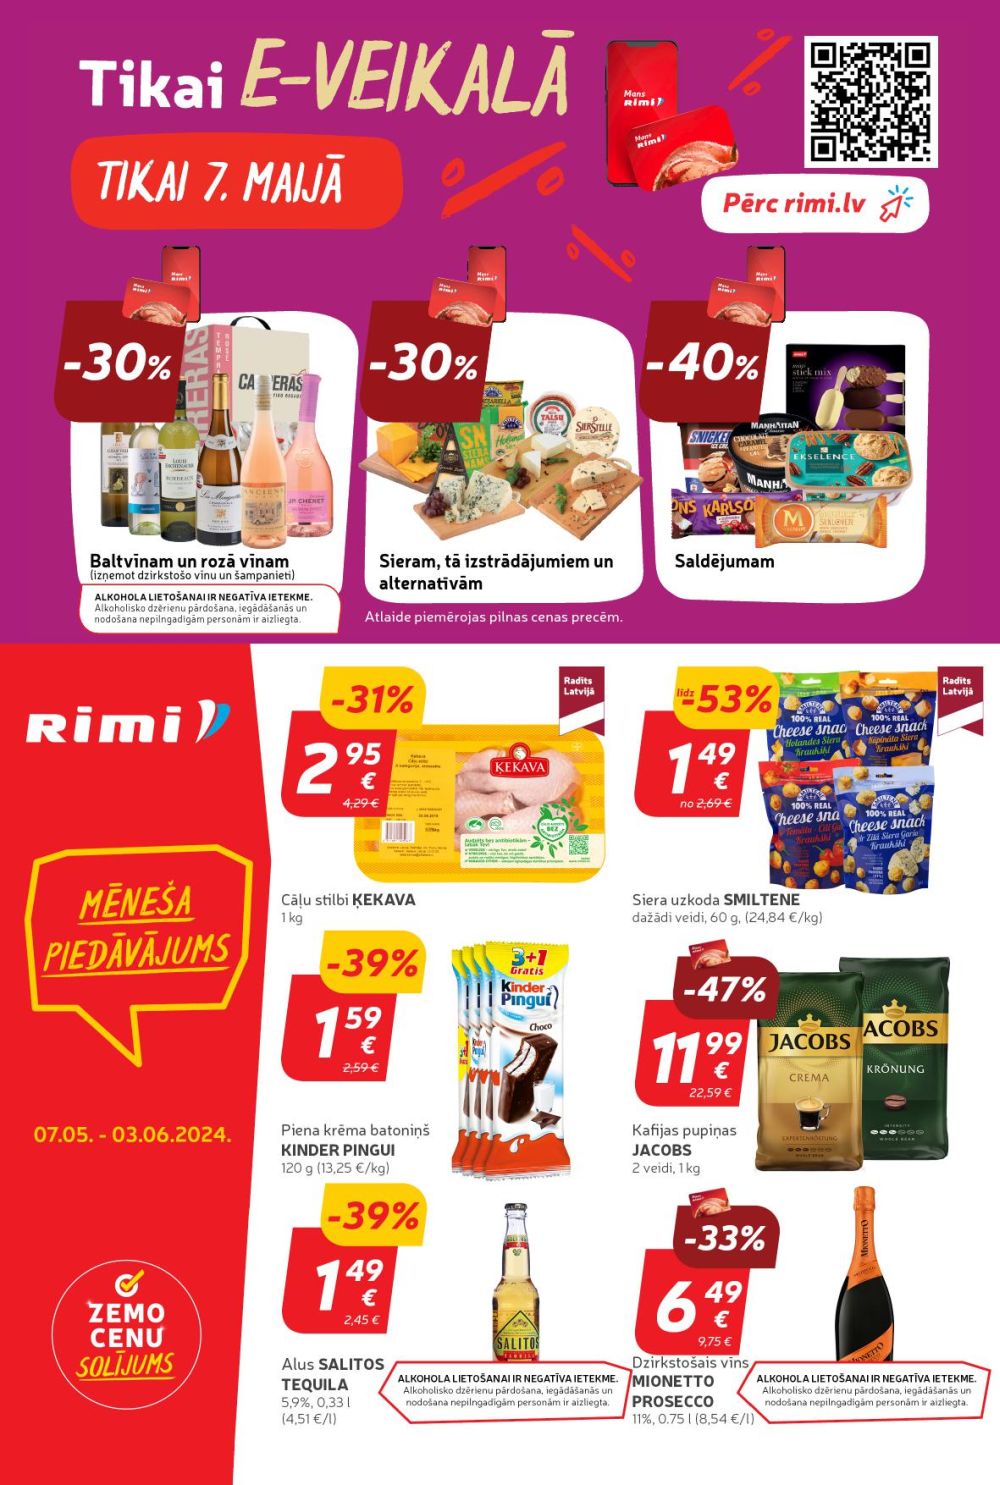 rimi - RIMI (07.05.2024 - 13.05.2024) - page: 5